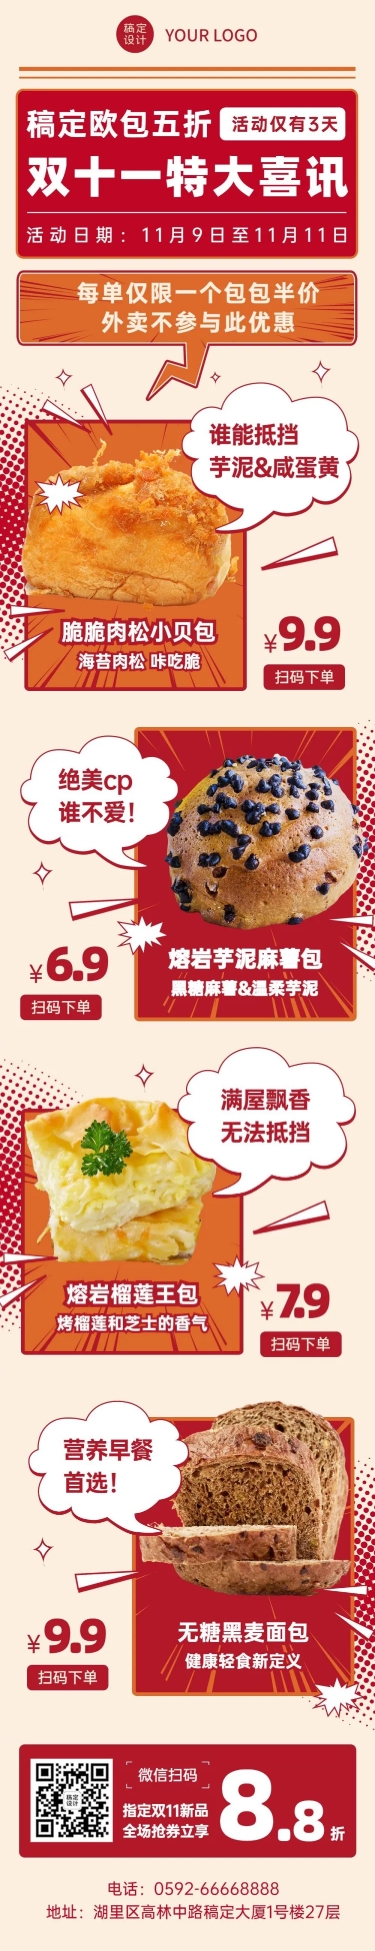 双十一烘焙甜点产品营销喜庆文章长图